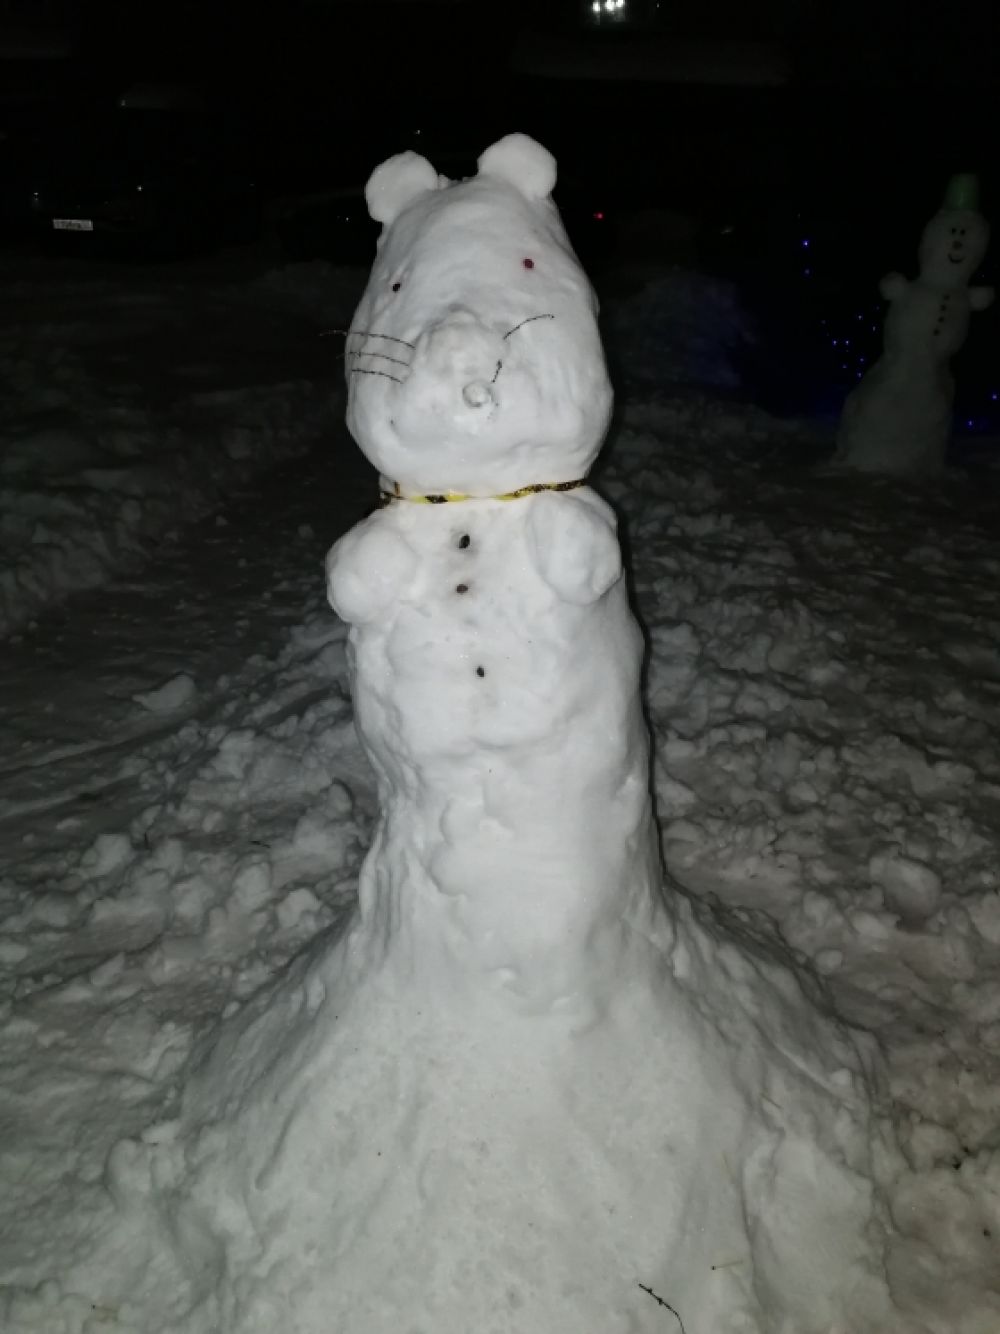 За крысой подглядывает снеговик в "цилиндре".